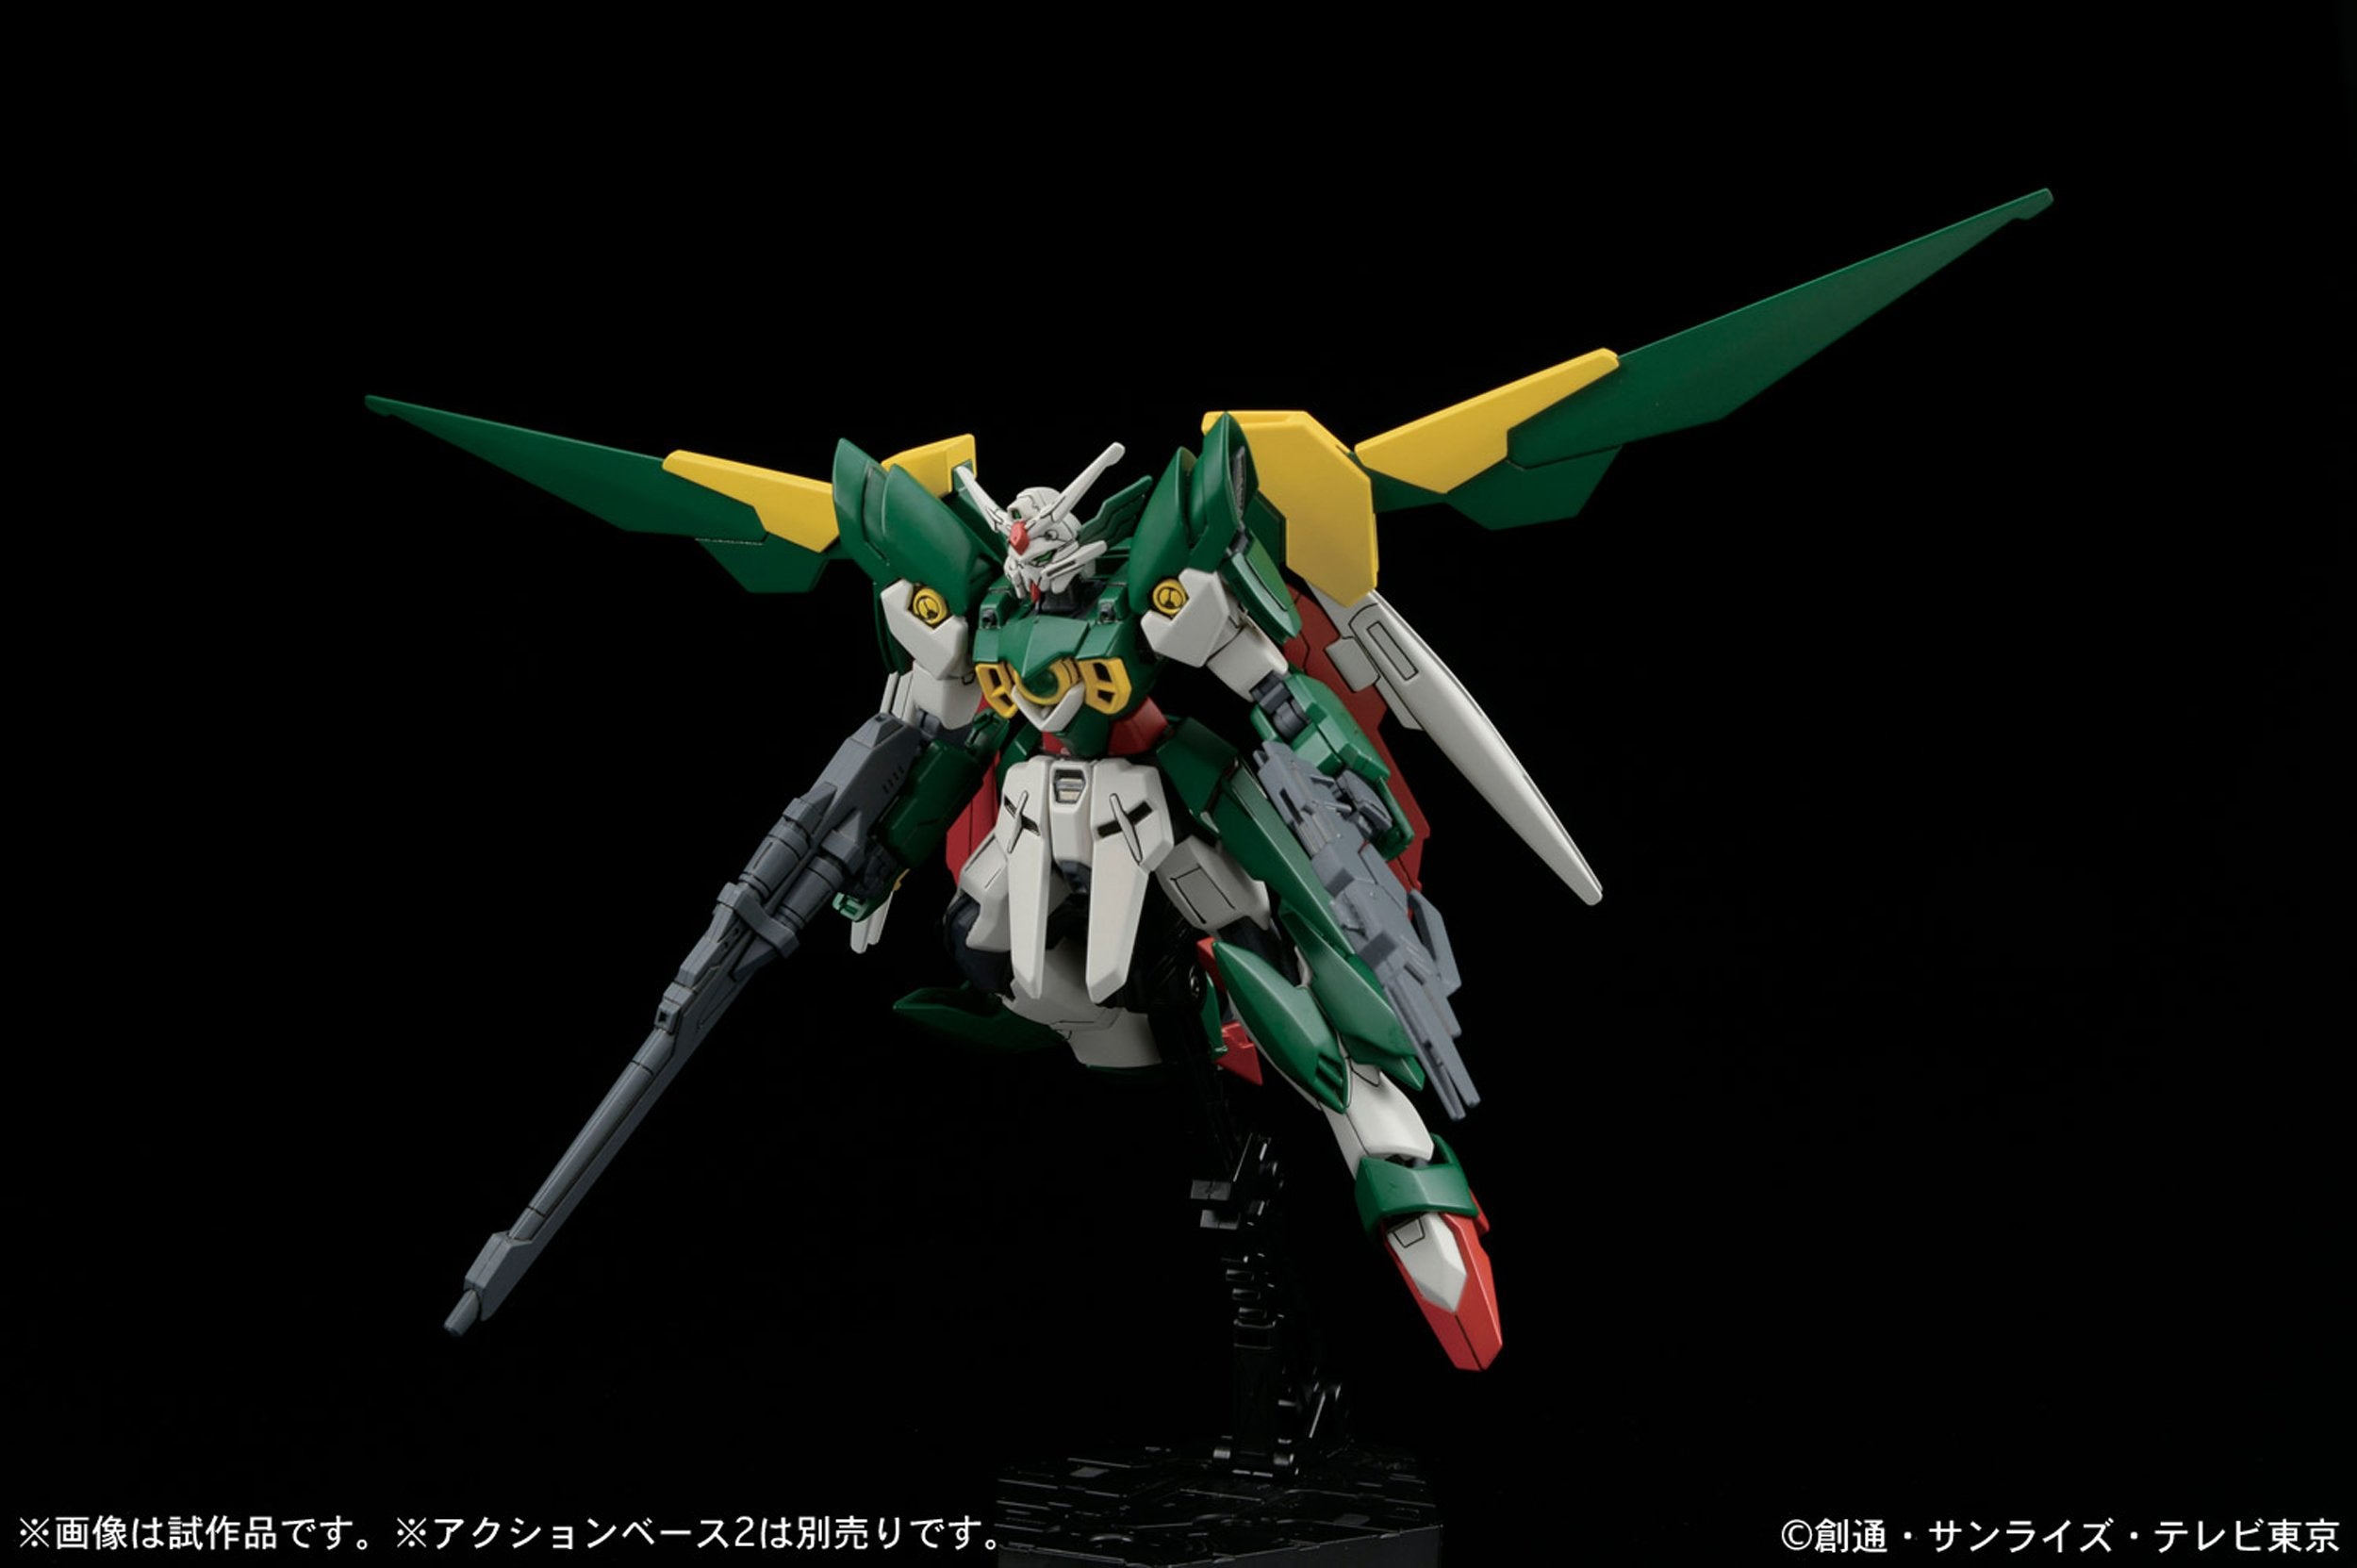 HGBF - XXXG-01Wfr Gundam Fenice Rinascita